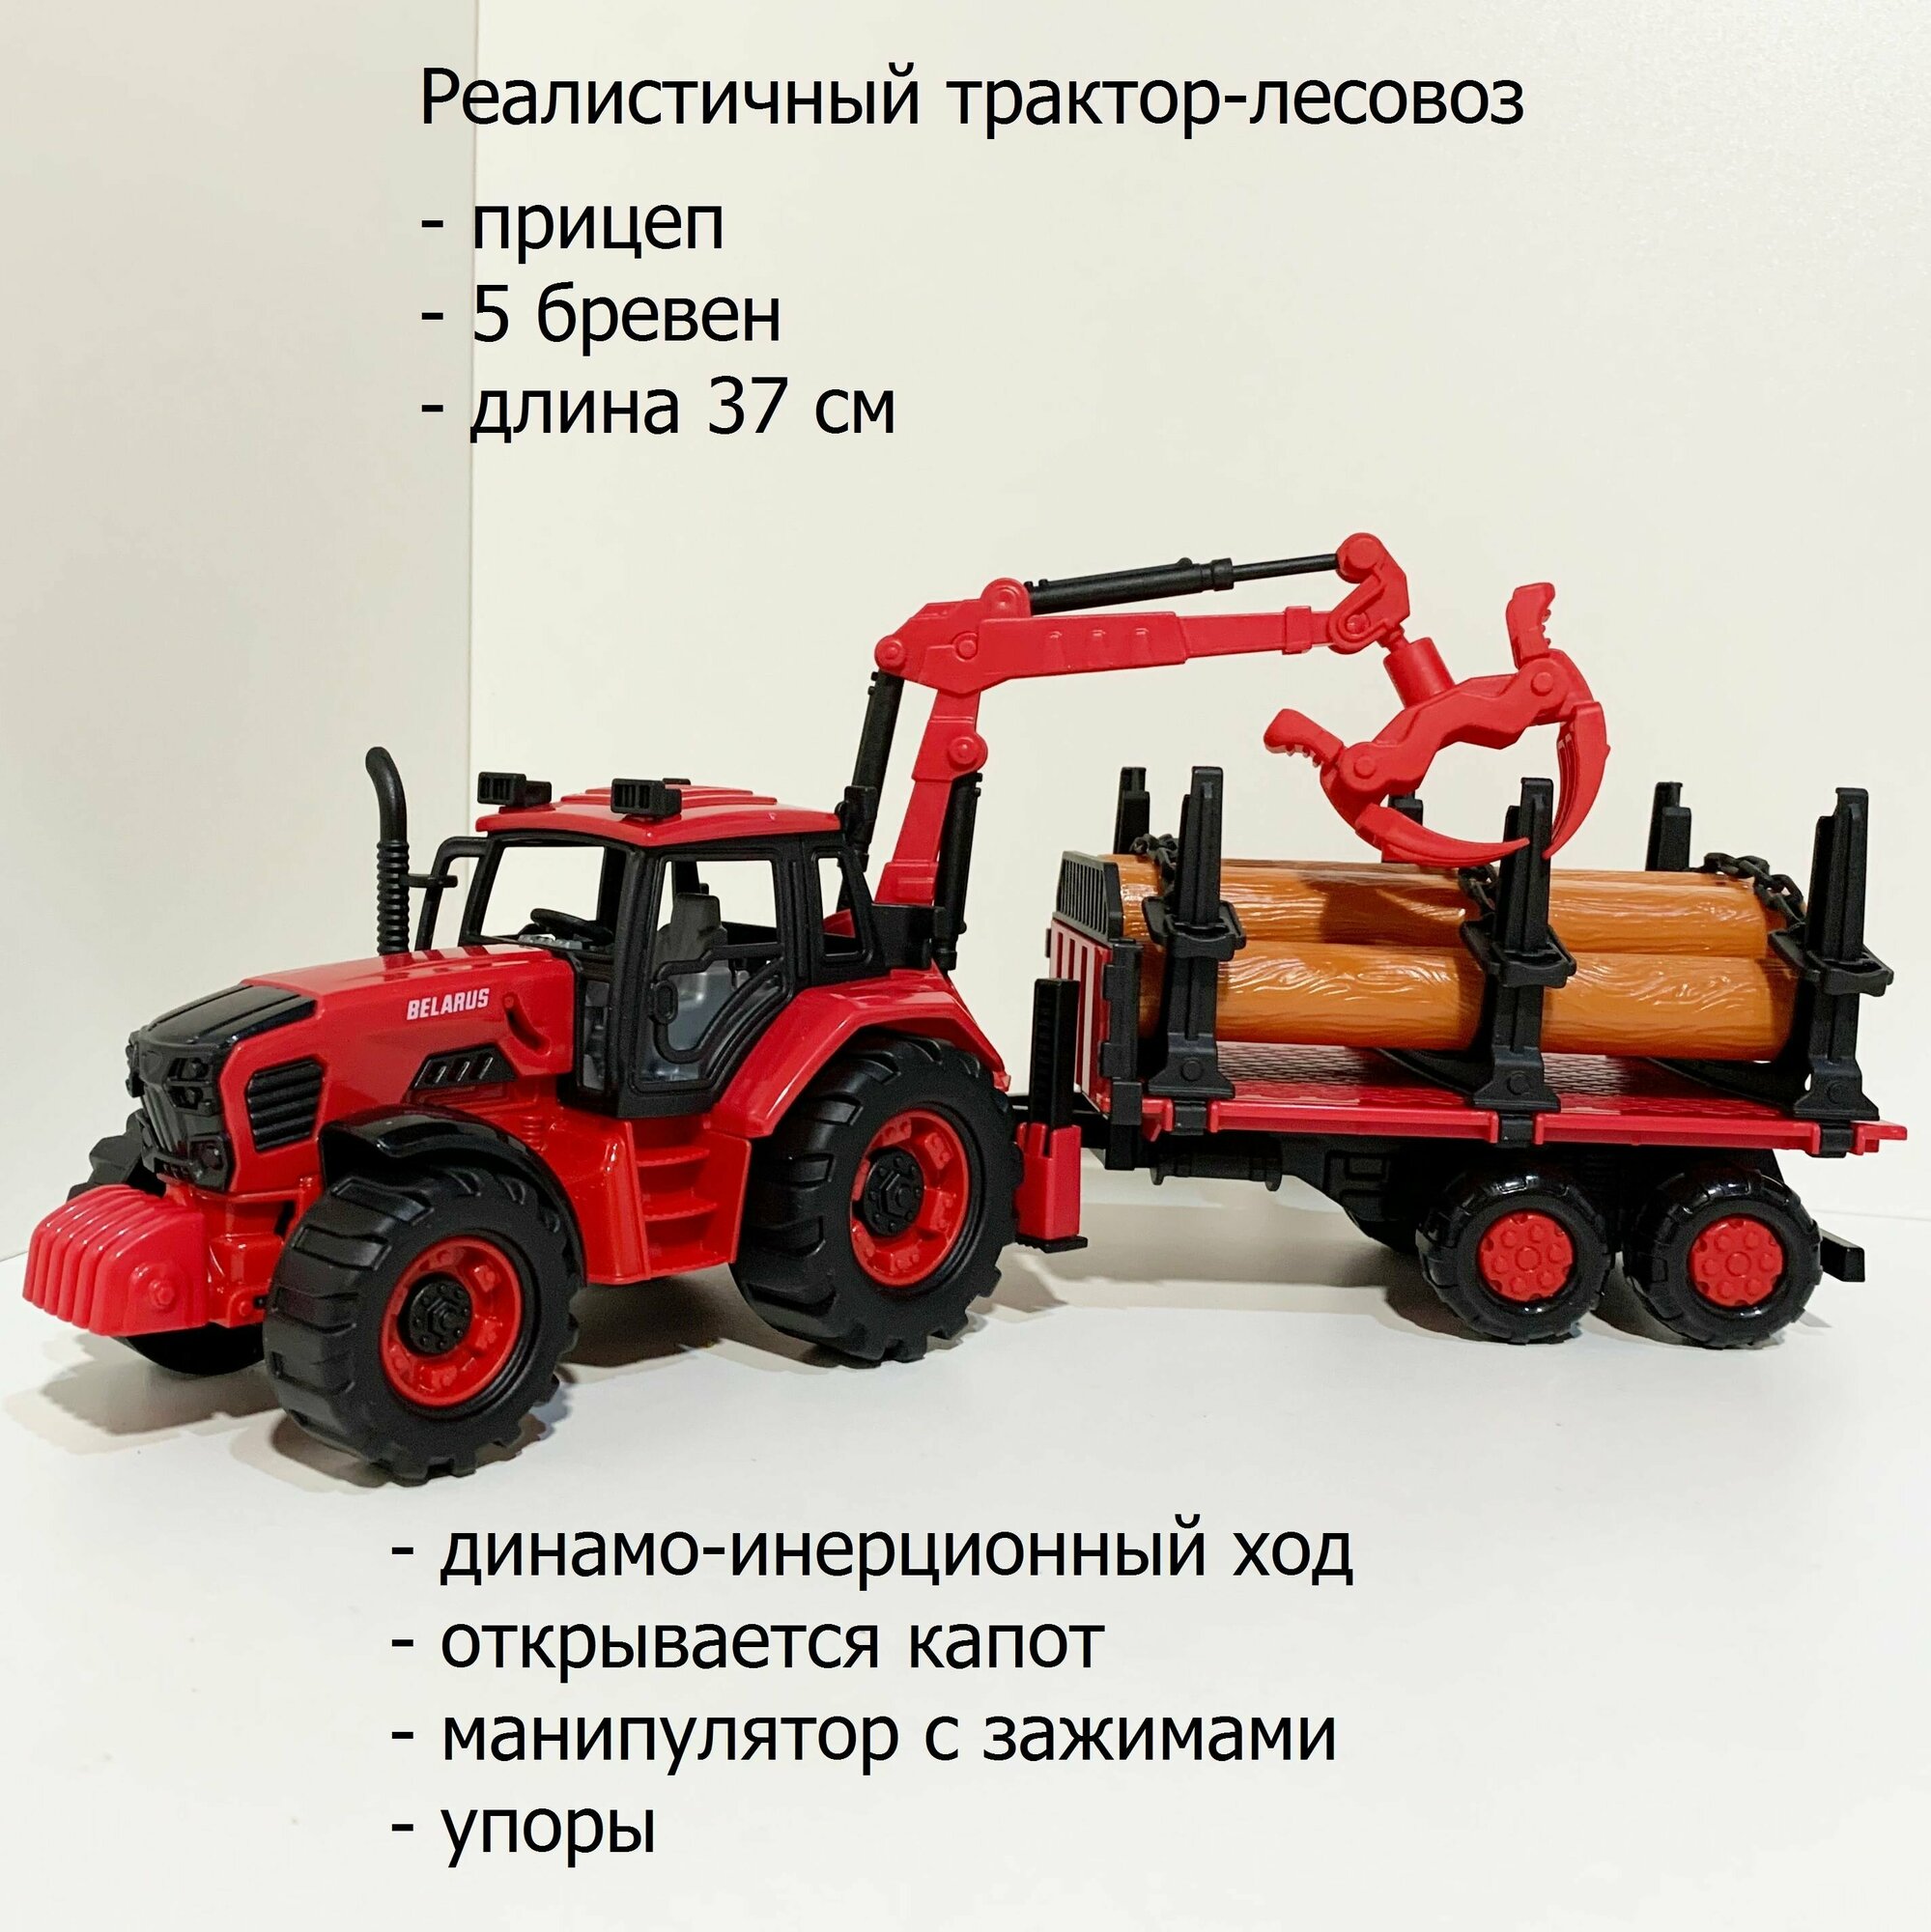 Инерционный трактор-лесовоз BELARUS с краном и с прицепом для перевозки бревен 37 см